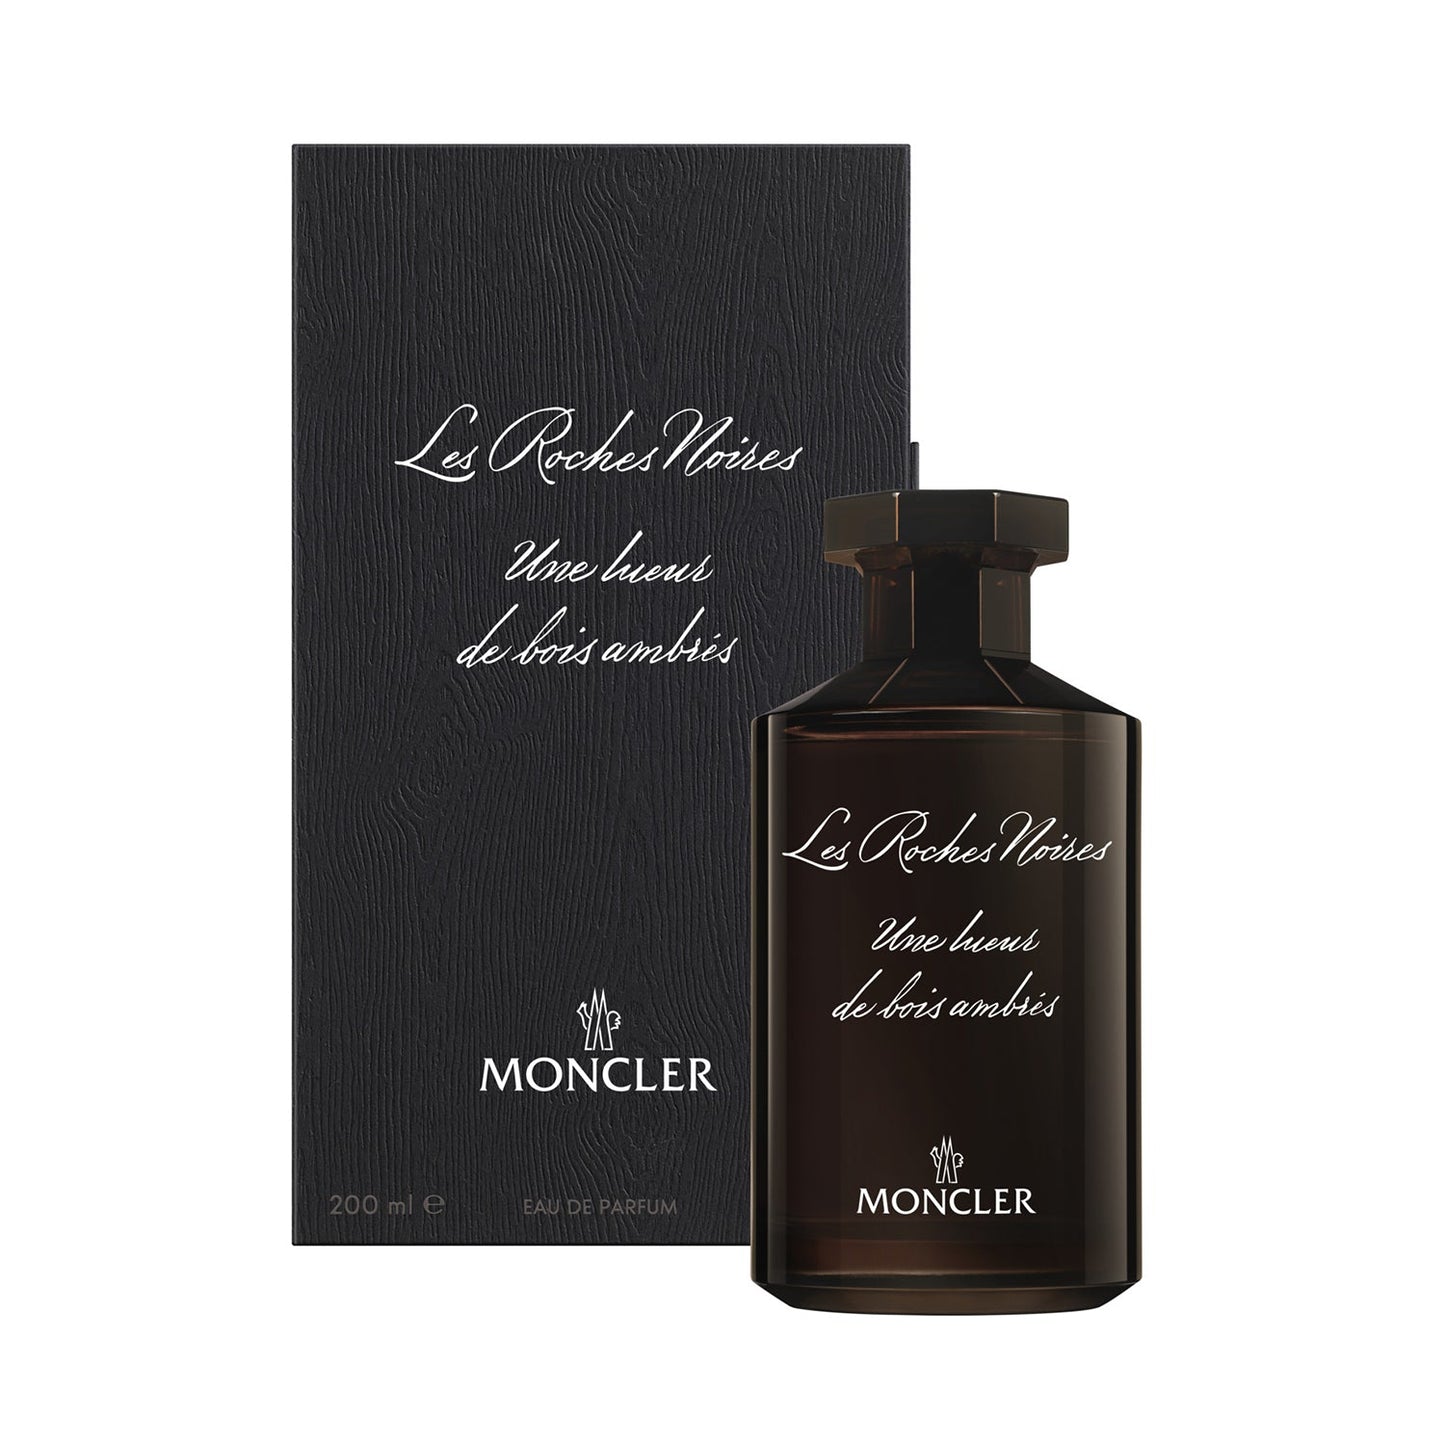 Moncler Collection Le Roches Noires Edp 200Ml